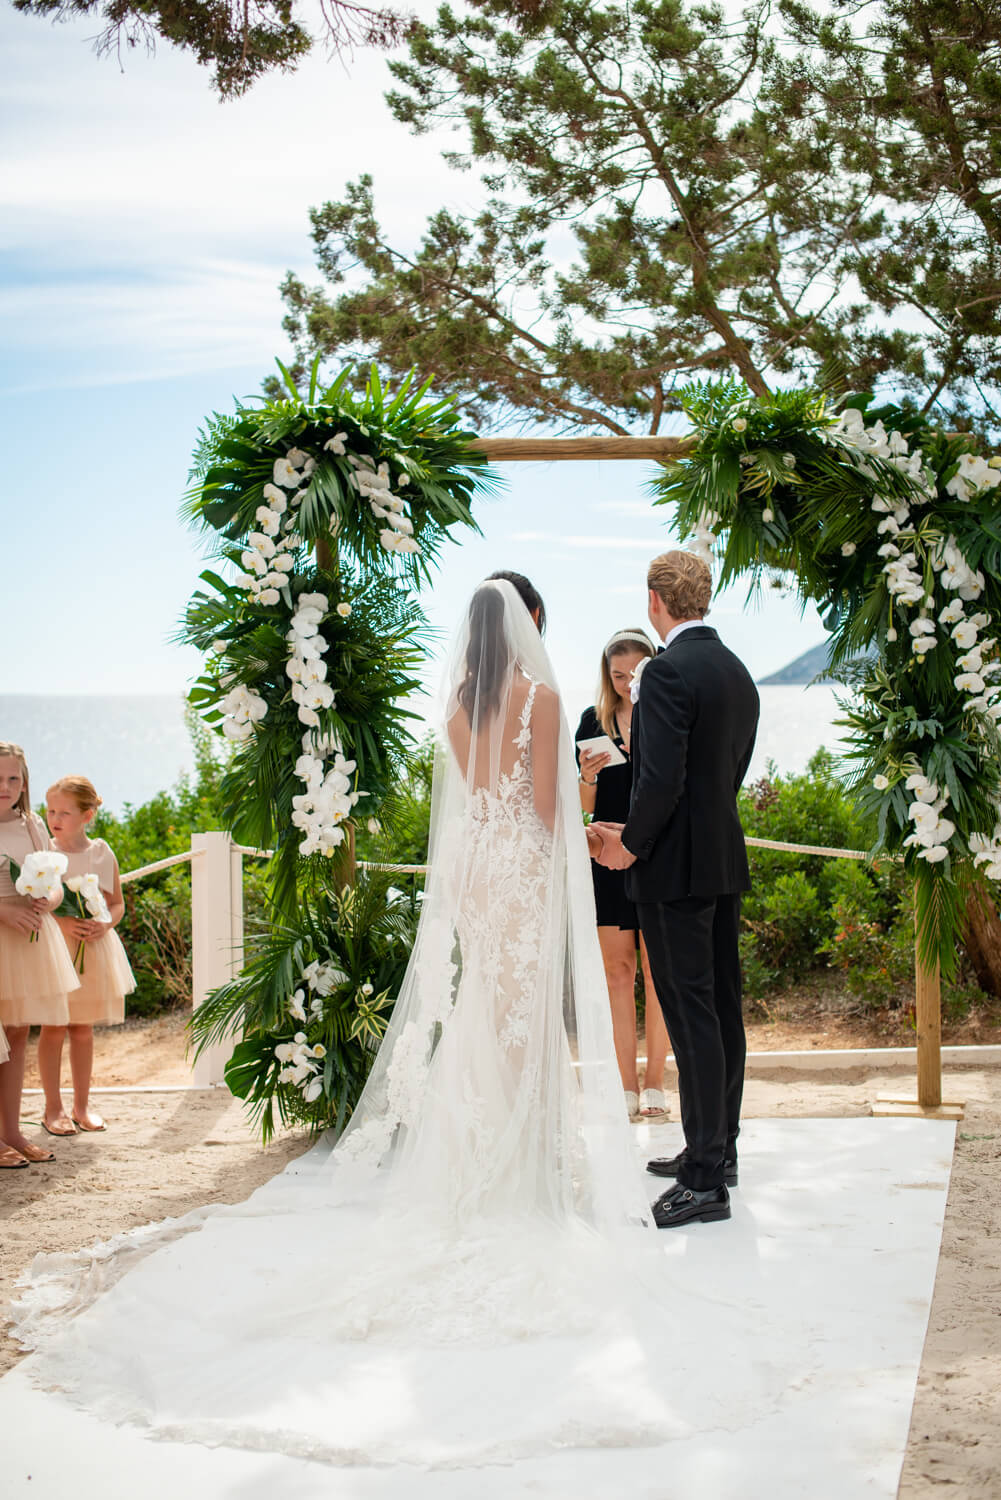 Bride and groom at Nikki beach, Ibiza at the altar